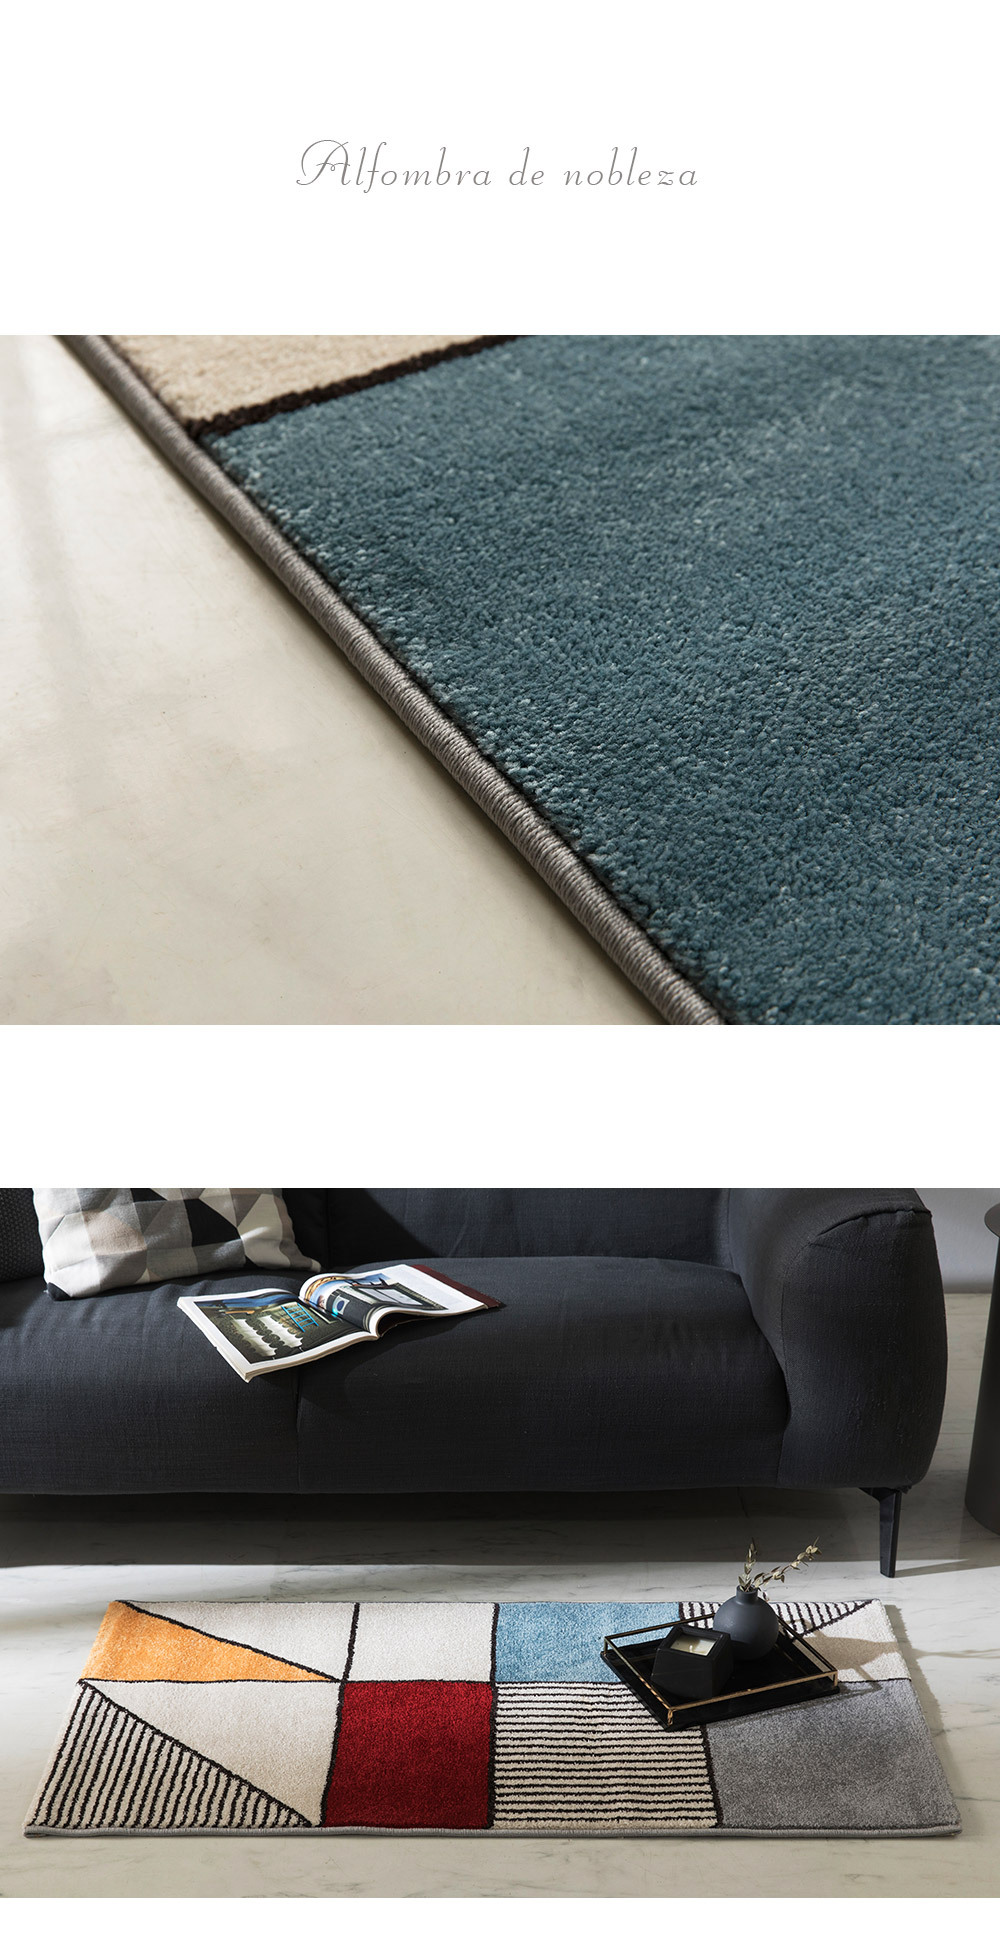 spain carpet nobleza rug - detail cut